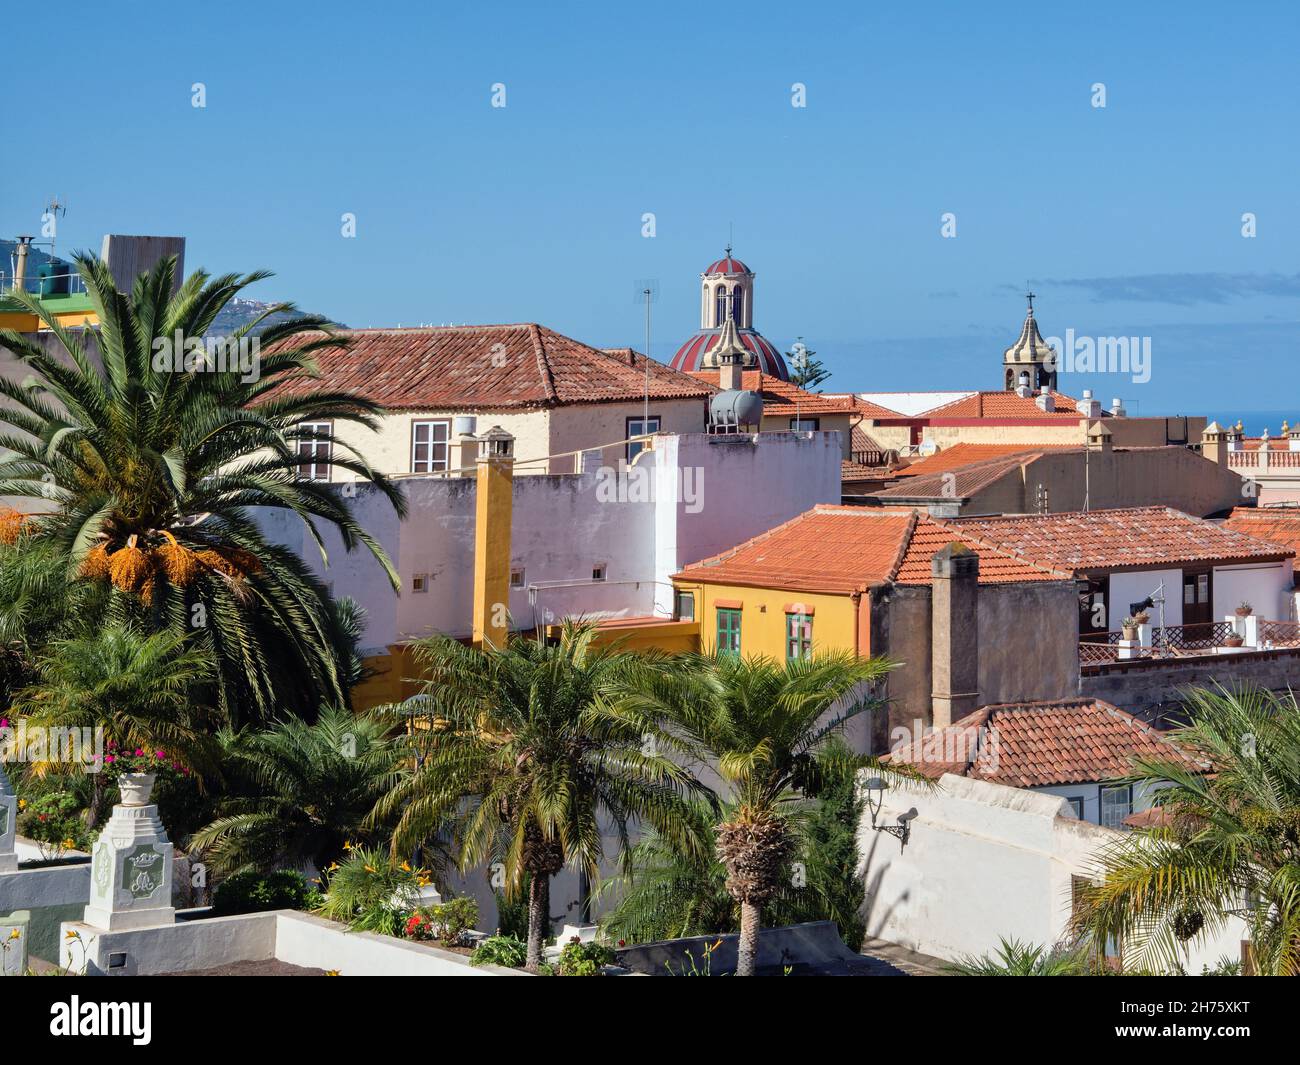 Vista sui tetti di tegole rosse della città vecchia di la Orotava nel nord dell'isola delle Canarie a Tenerife. Di fronte ad esso il blu scuro, Atlantico calmo Foto Stock